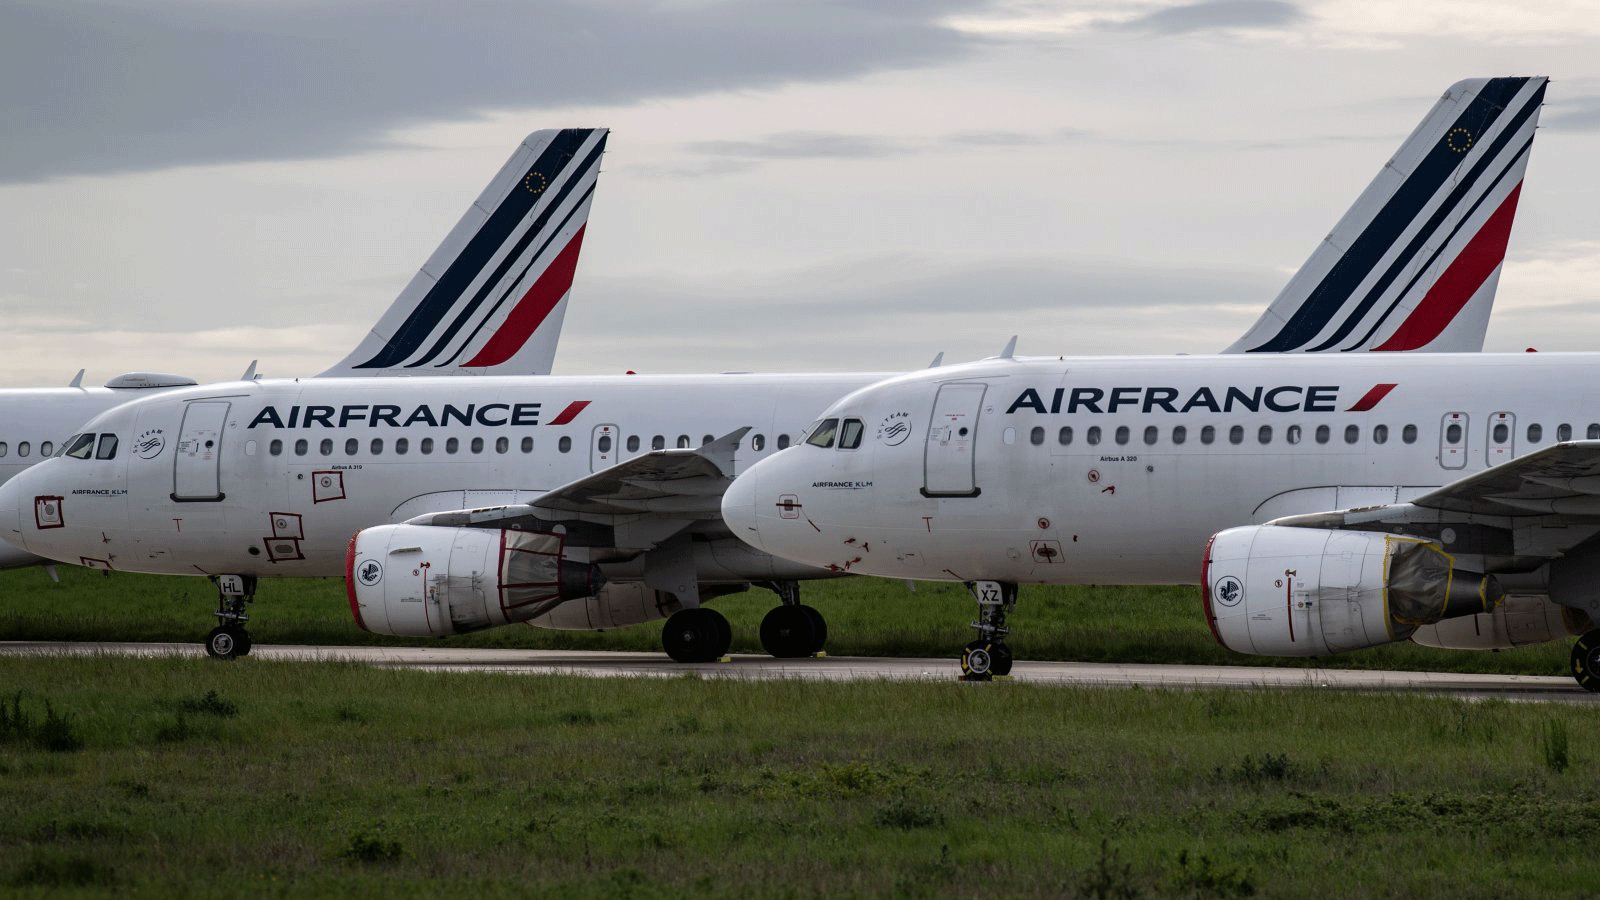 طائرات الخطوط الجوية الفرنسية متوقفة على مدرج مطار شارل ديغول في رواسي، فرنسا، 30 نيسان/أبريل 2020